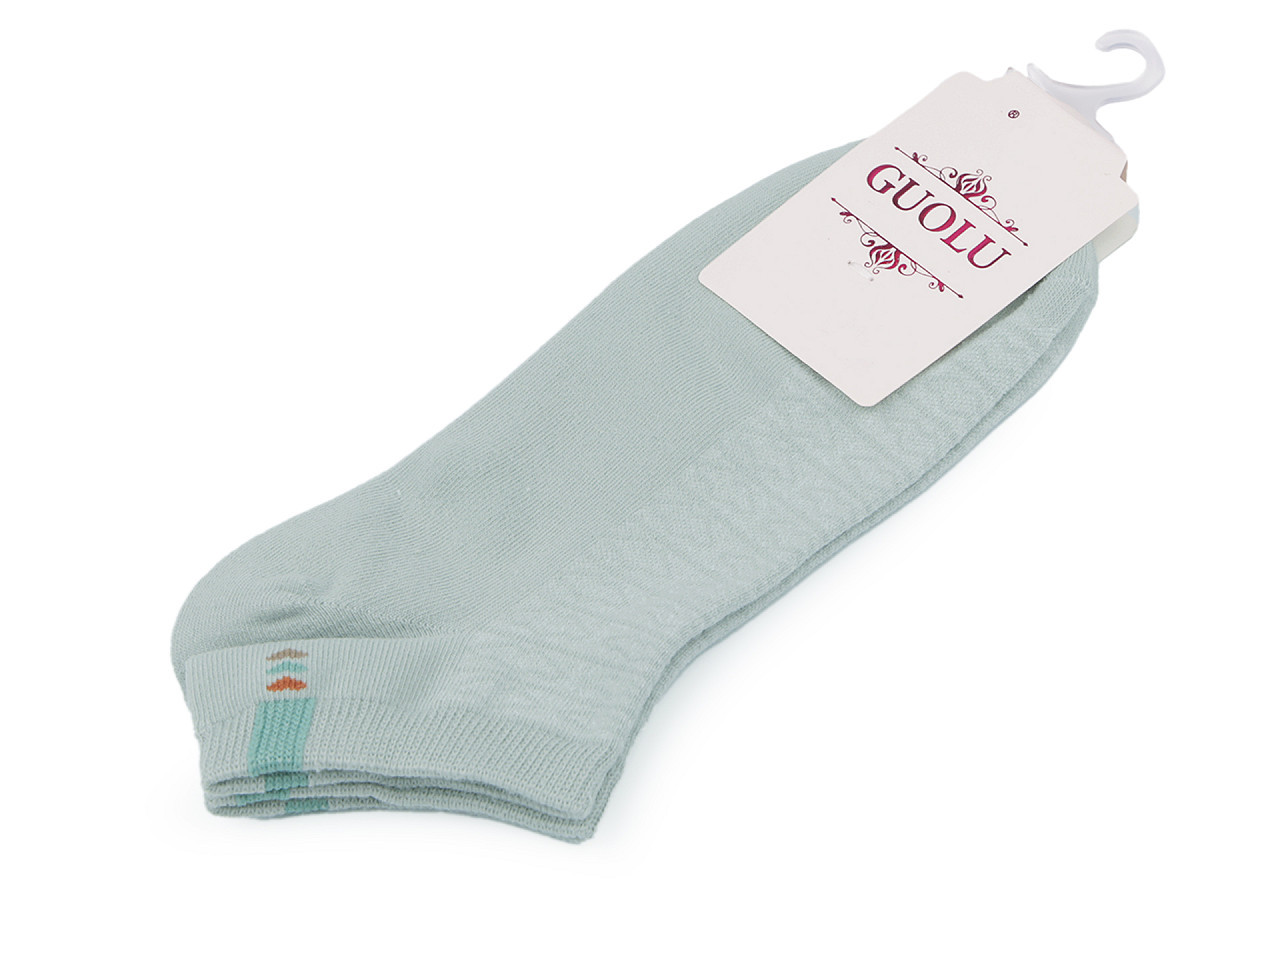 Dámské / dívčí bavlněné ponožky do tenisek, barva 4 šedozelená sv. srdce